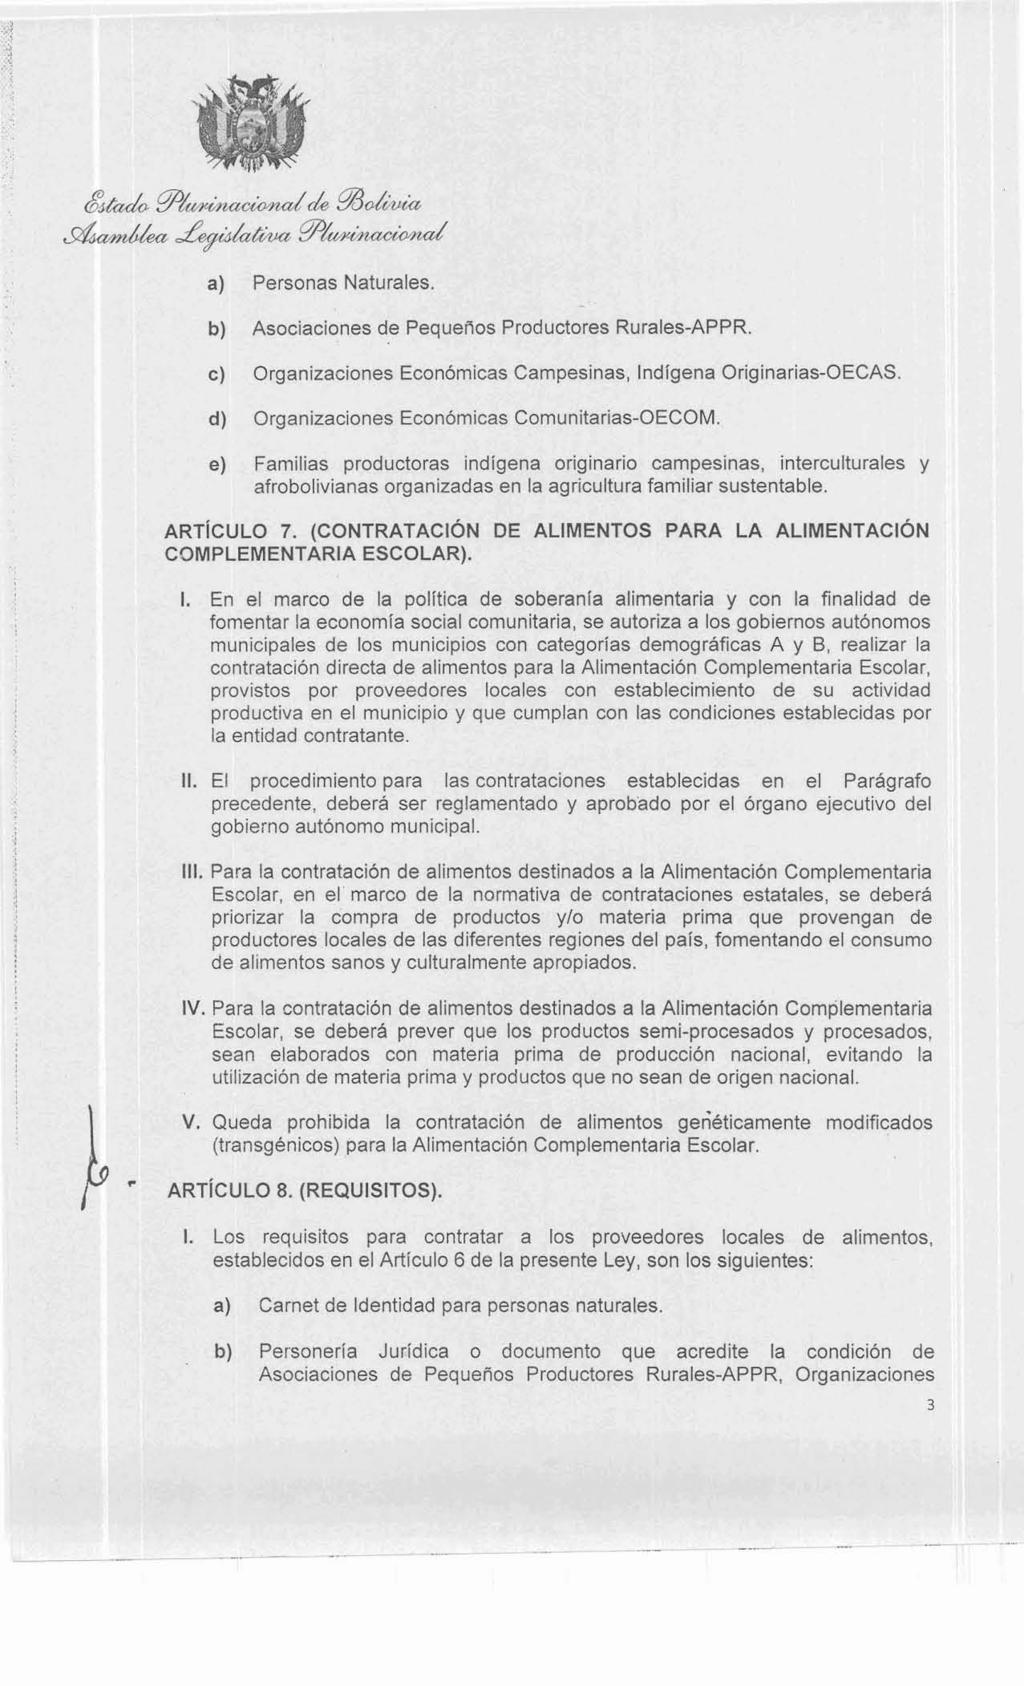 a) Personas Naturales. b) Asociaciones de Pequeños Productores Rurales-APPR c) Organizaciones Económicas Campesinas, Indígena Originarias-OECAS.